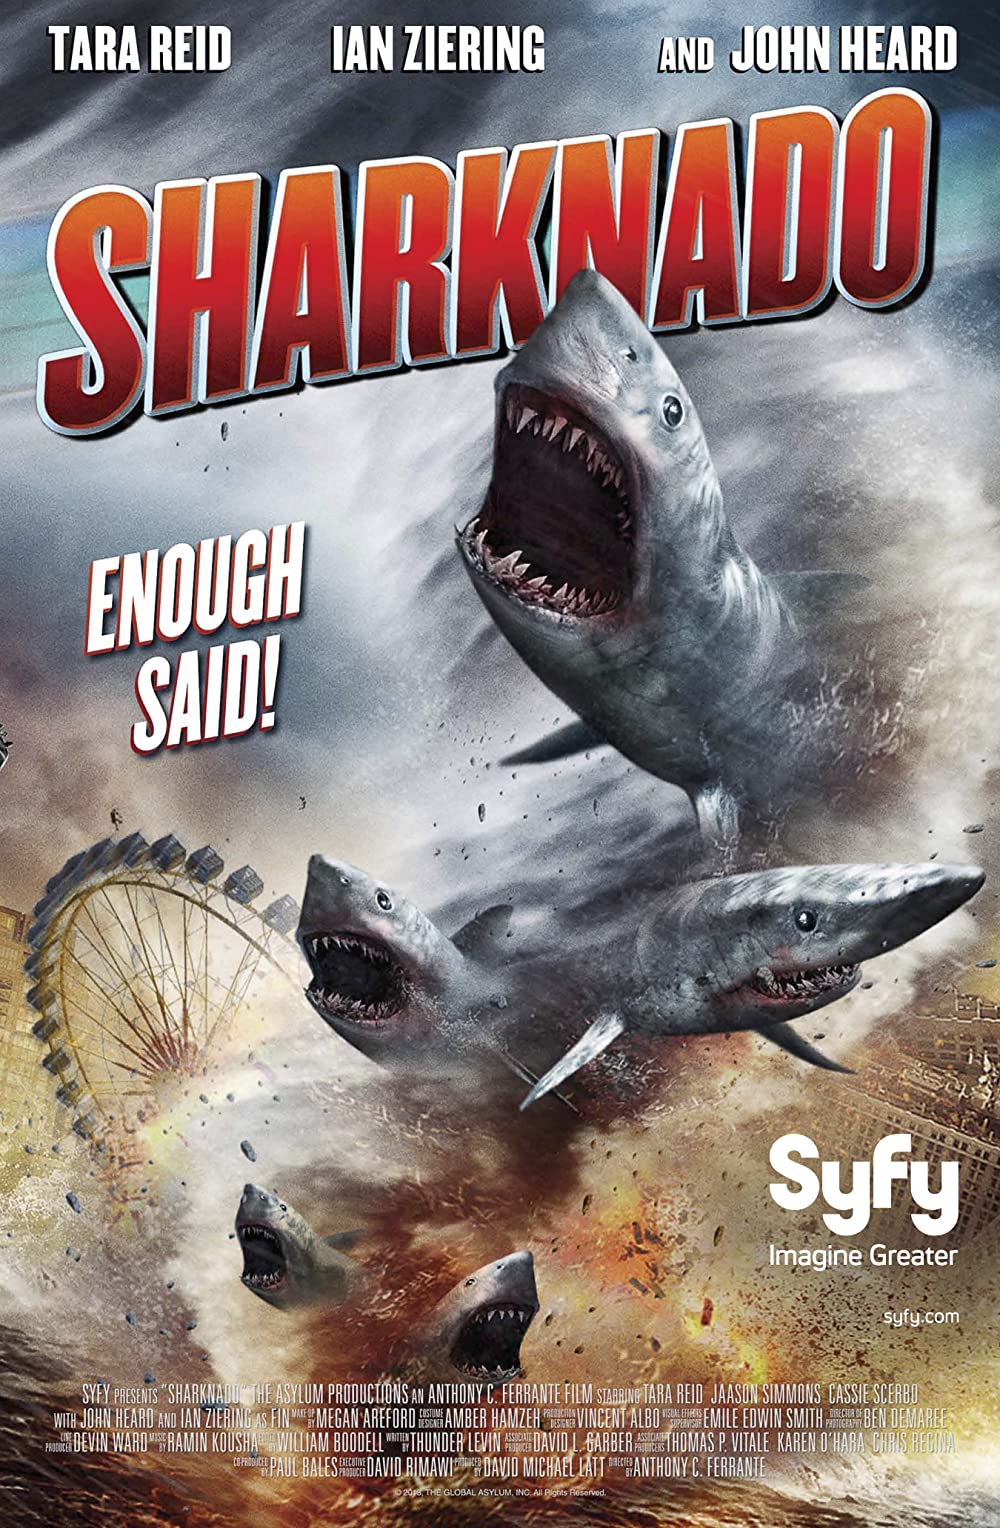 Filmbeschreibung zu Sharknado